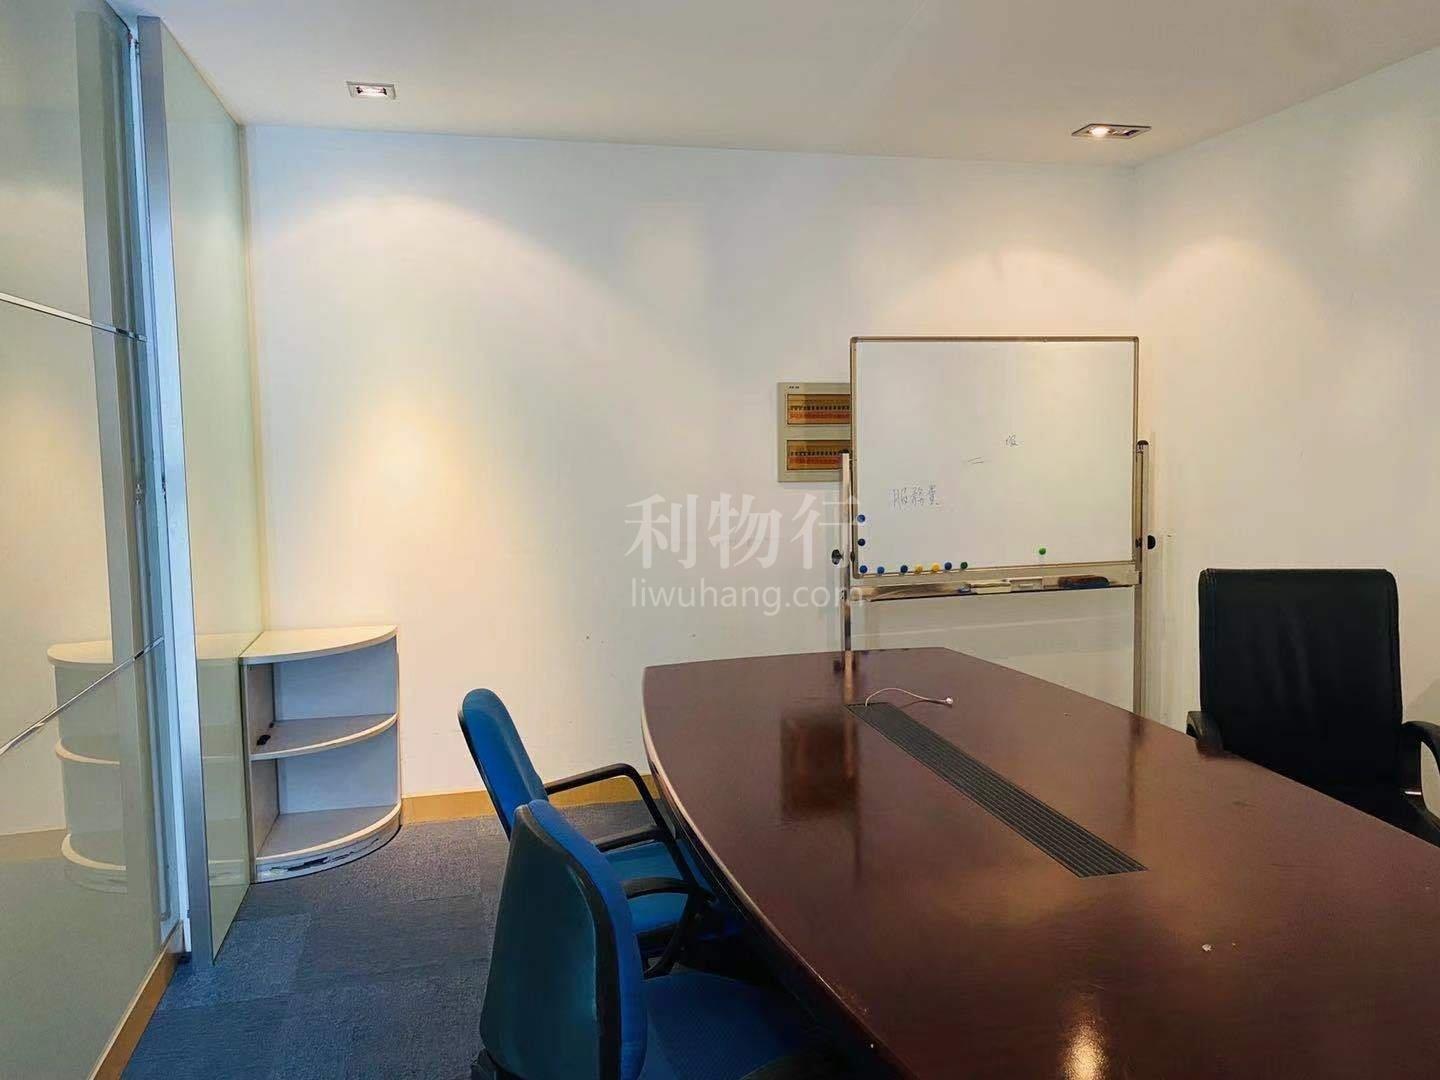 二百永新大厦写字楼145m2办公室5.00元/m2/天 精装修